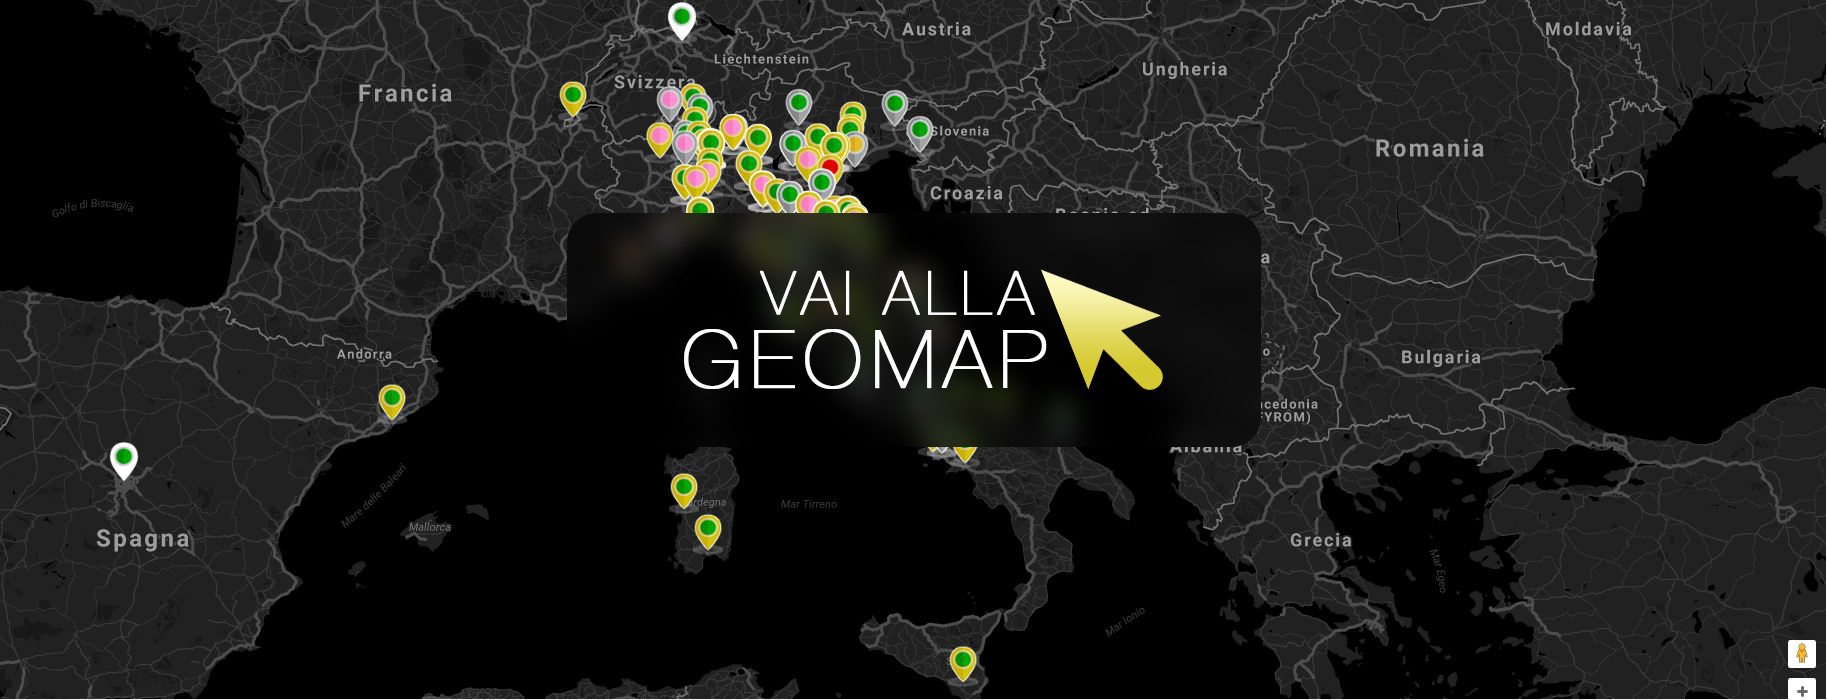 Guarda gli annunci a Ventimiglia nella mappa intervattiva